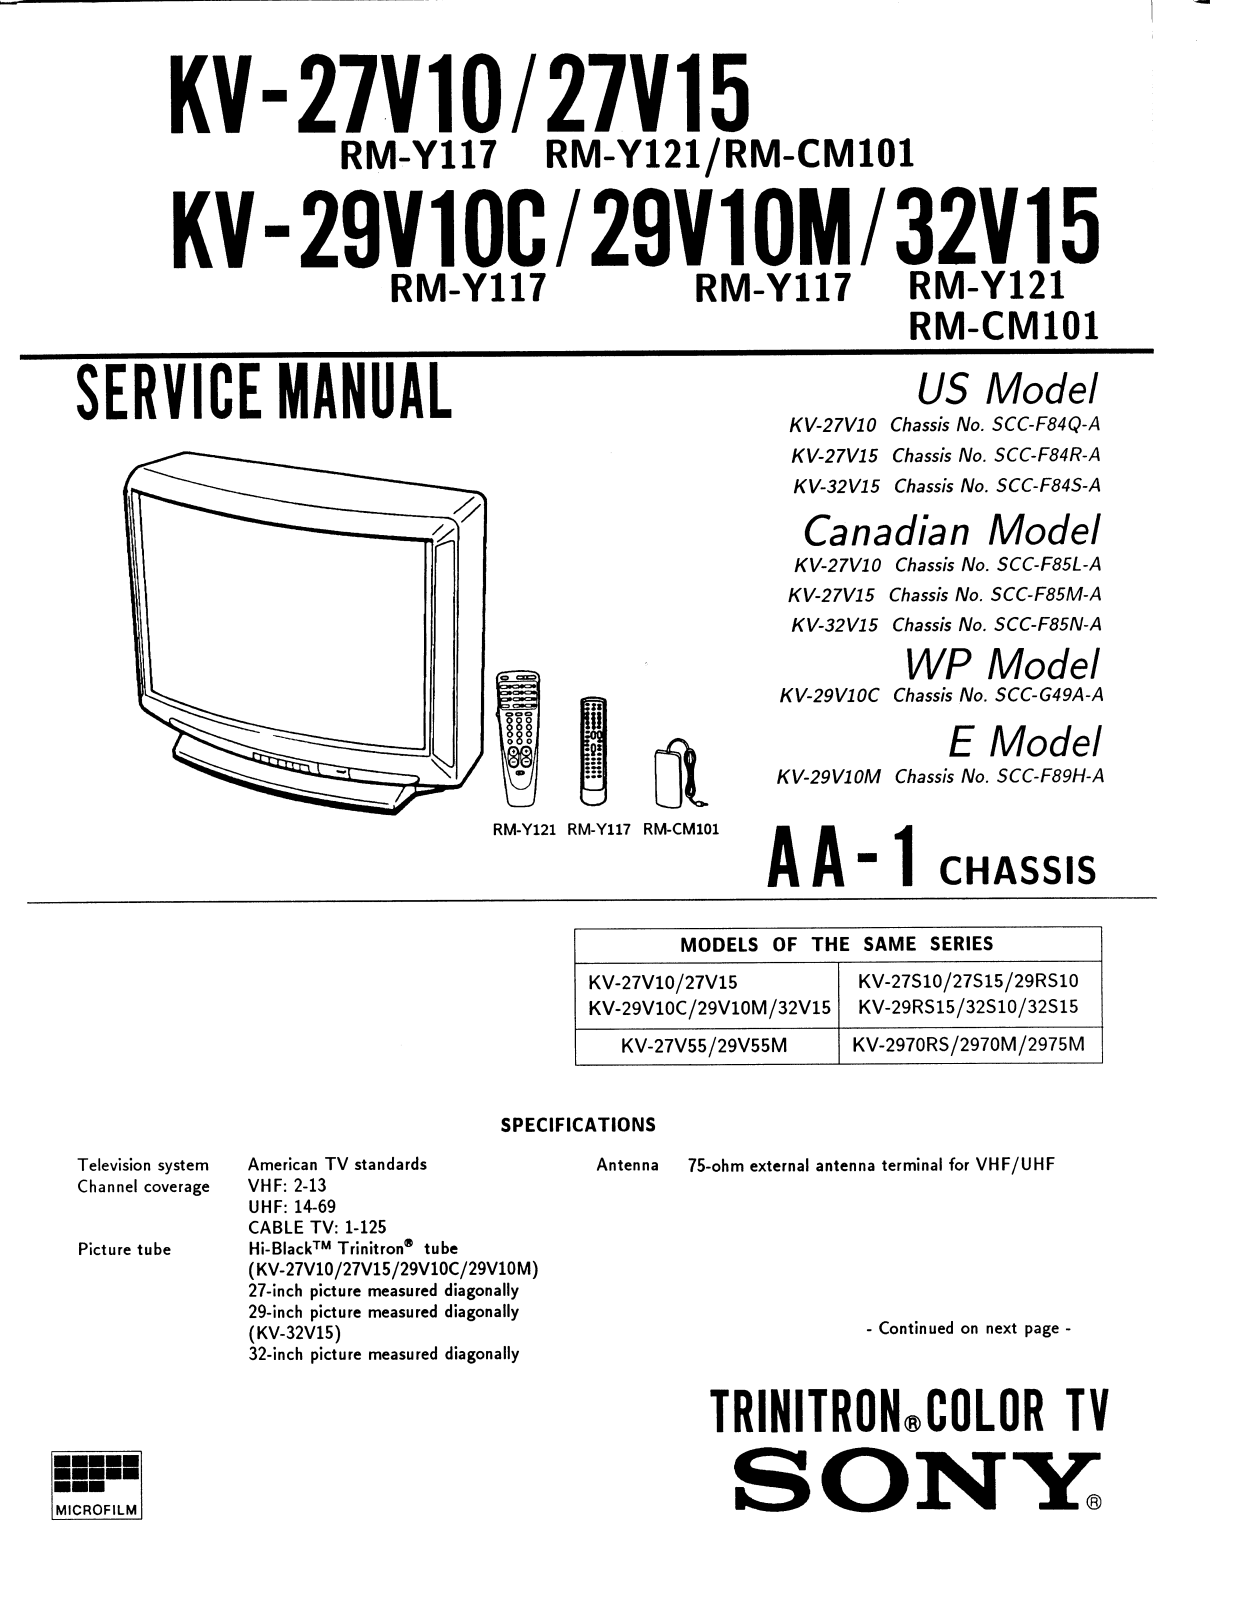 SONY KV-27V10, KV-27V15, KV-29V10C, KV-29V10M, KV-32V15 SERVICE MANUAL